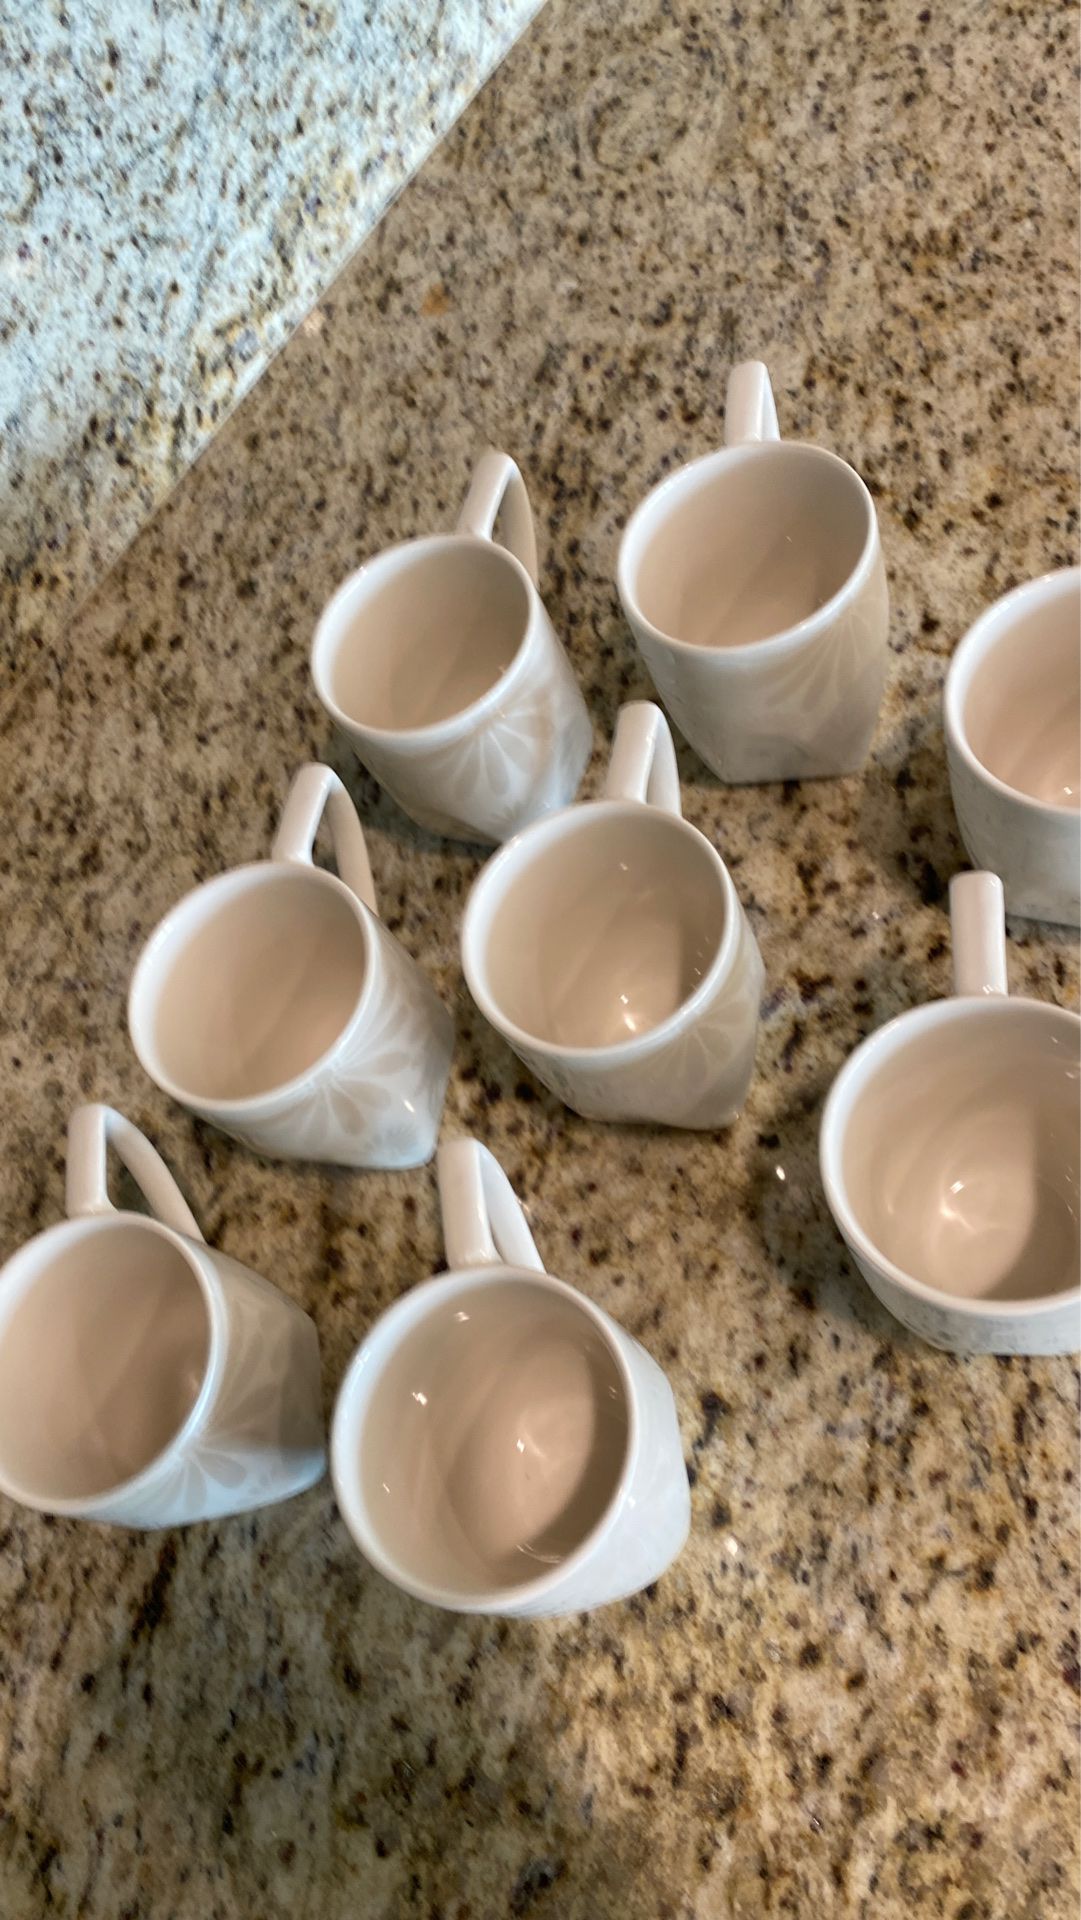 Tea/coffee cups/mugs